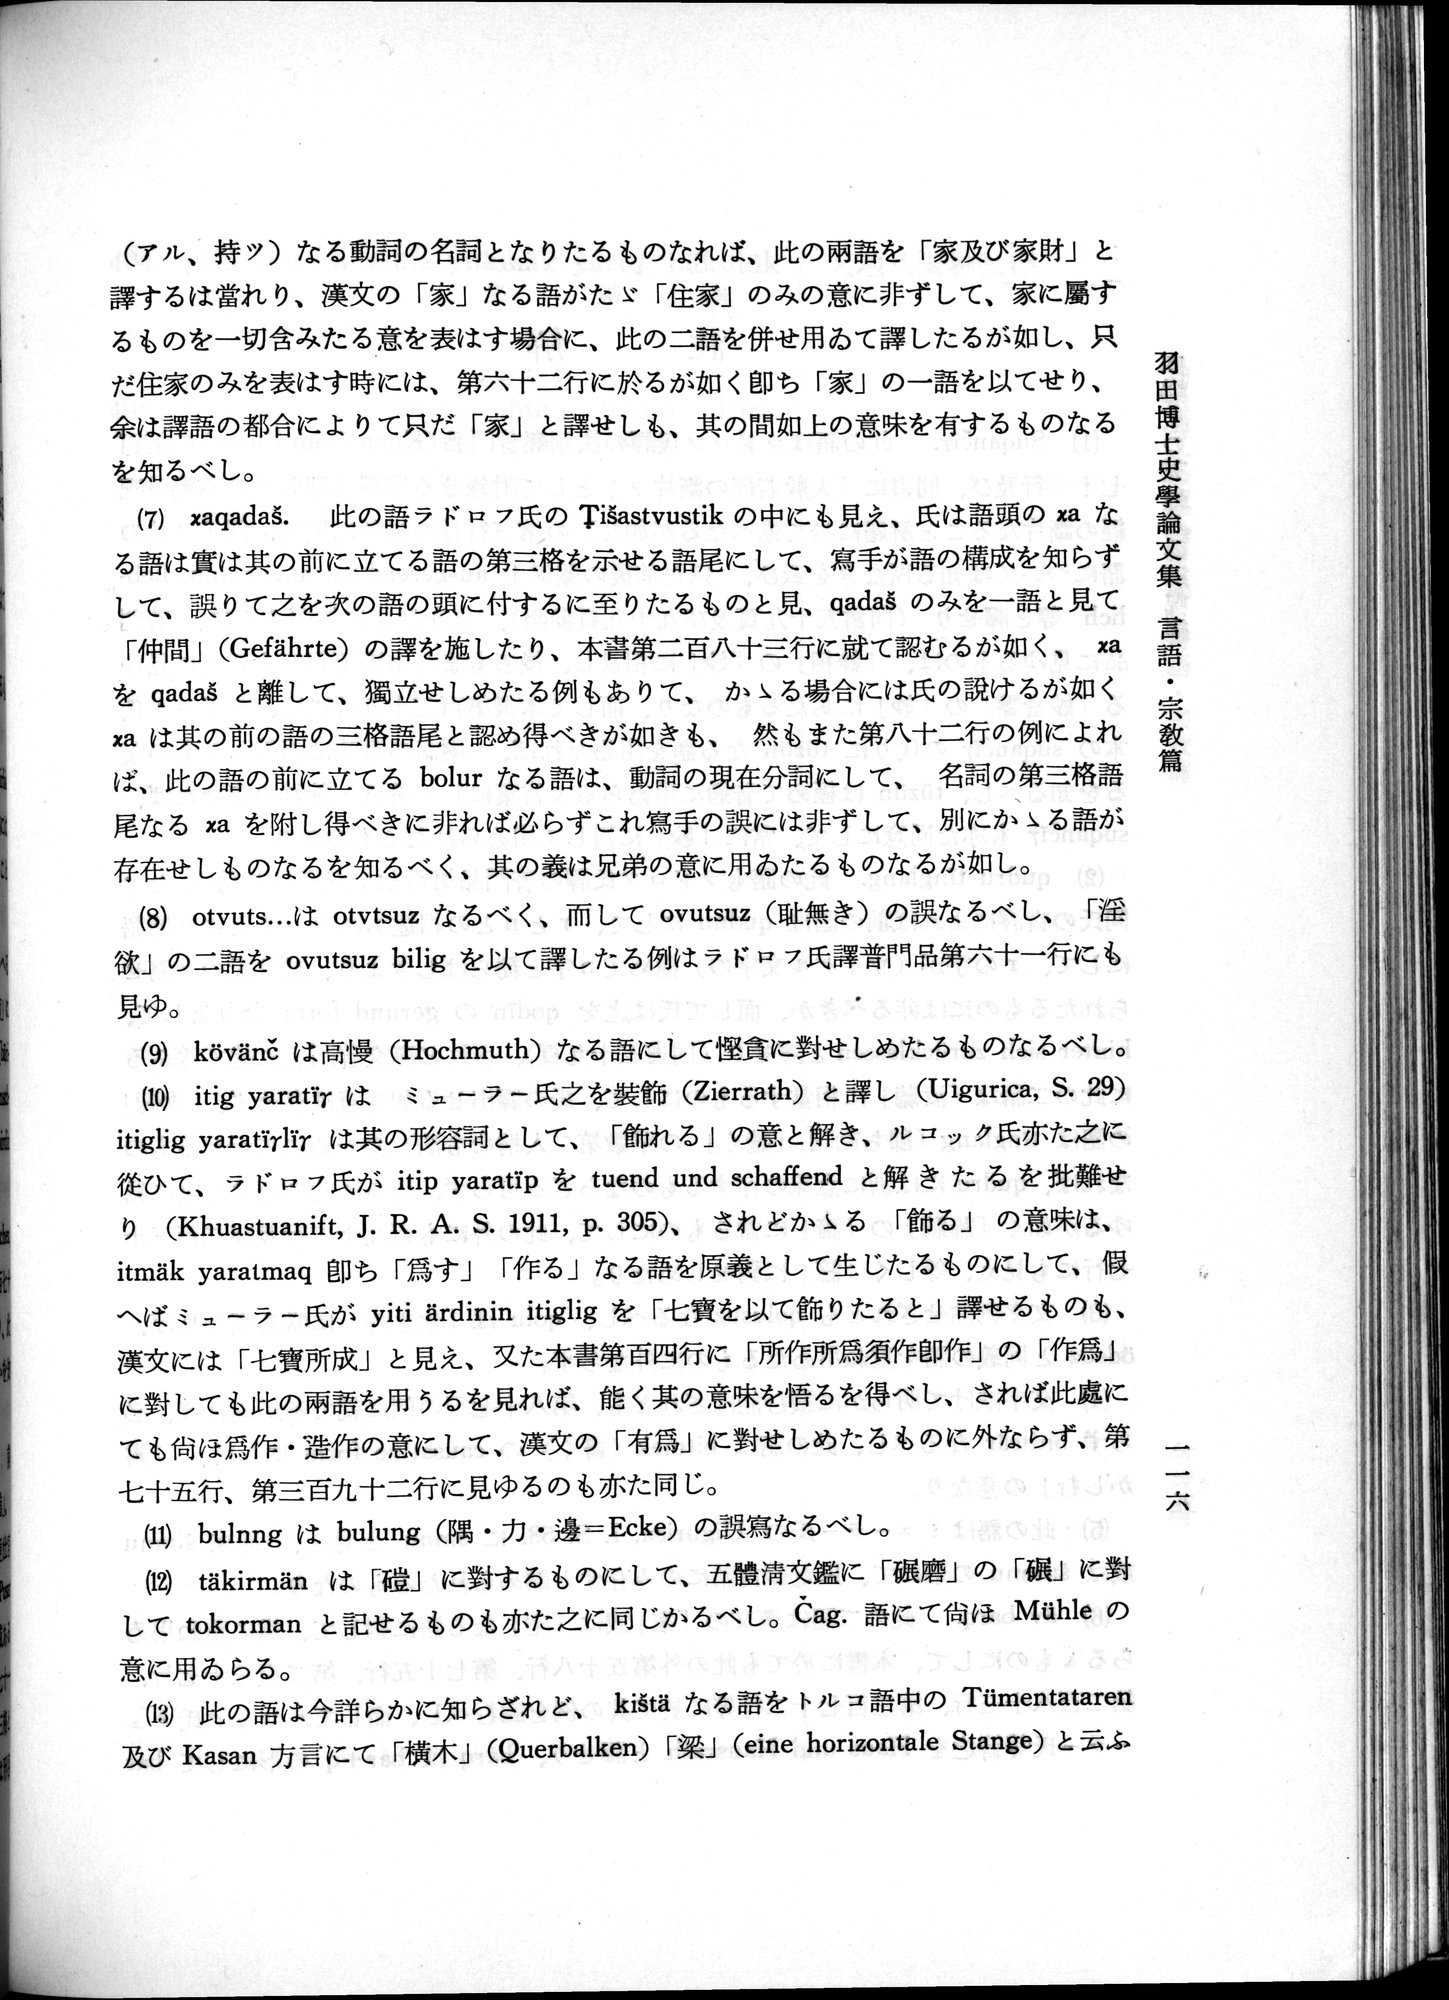 羽田博士史学論文集 : vol.2 / 178 ページ（白黒高解像度画像）